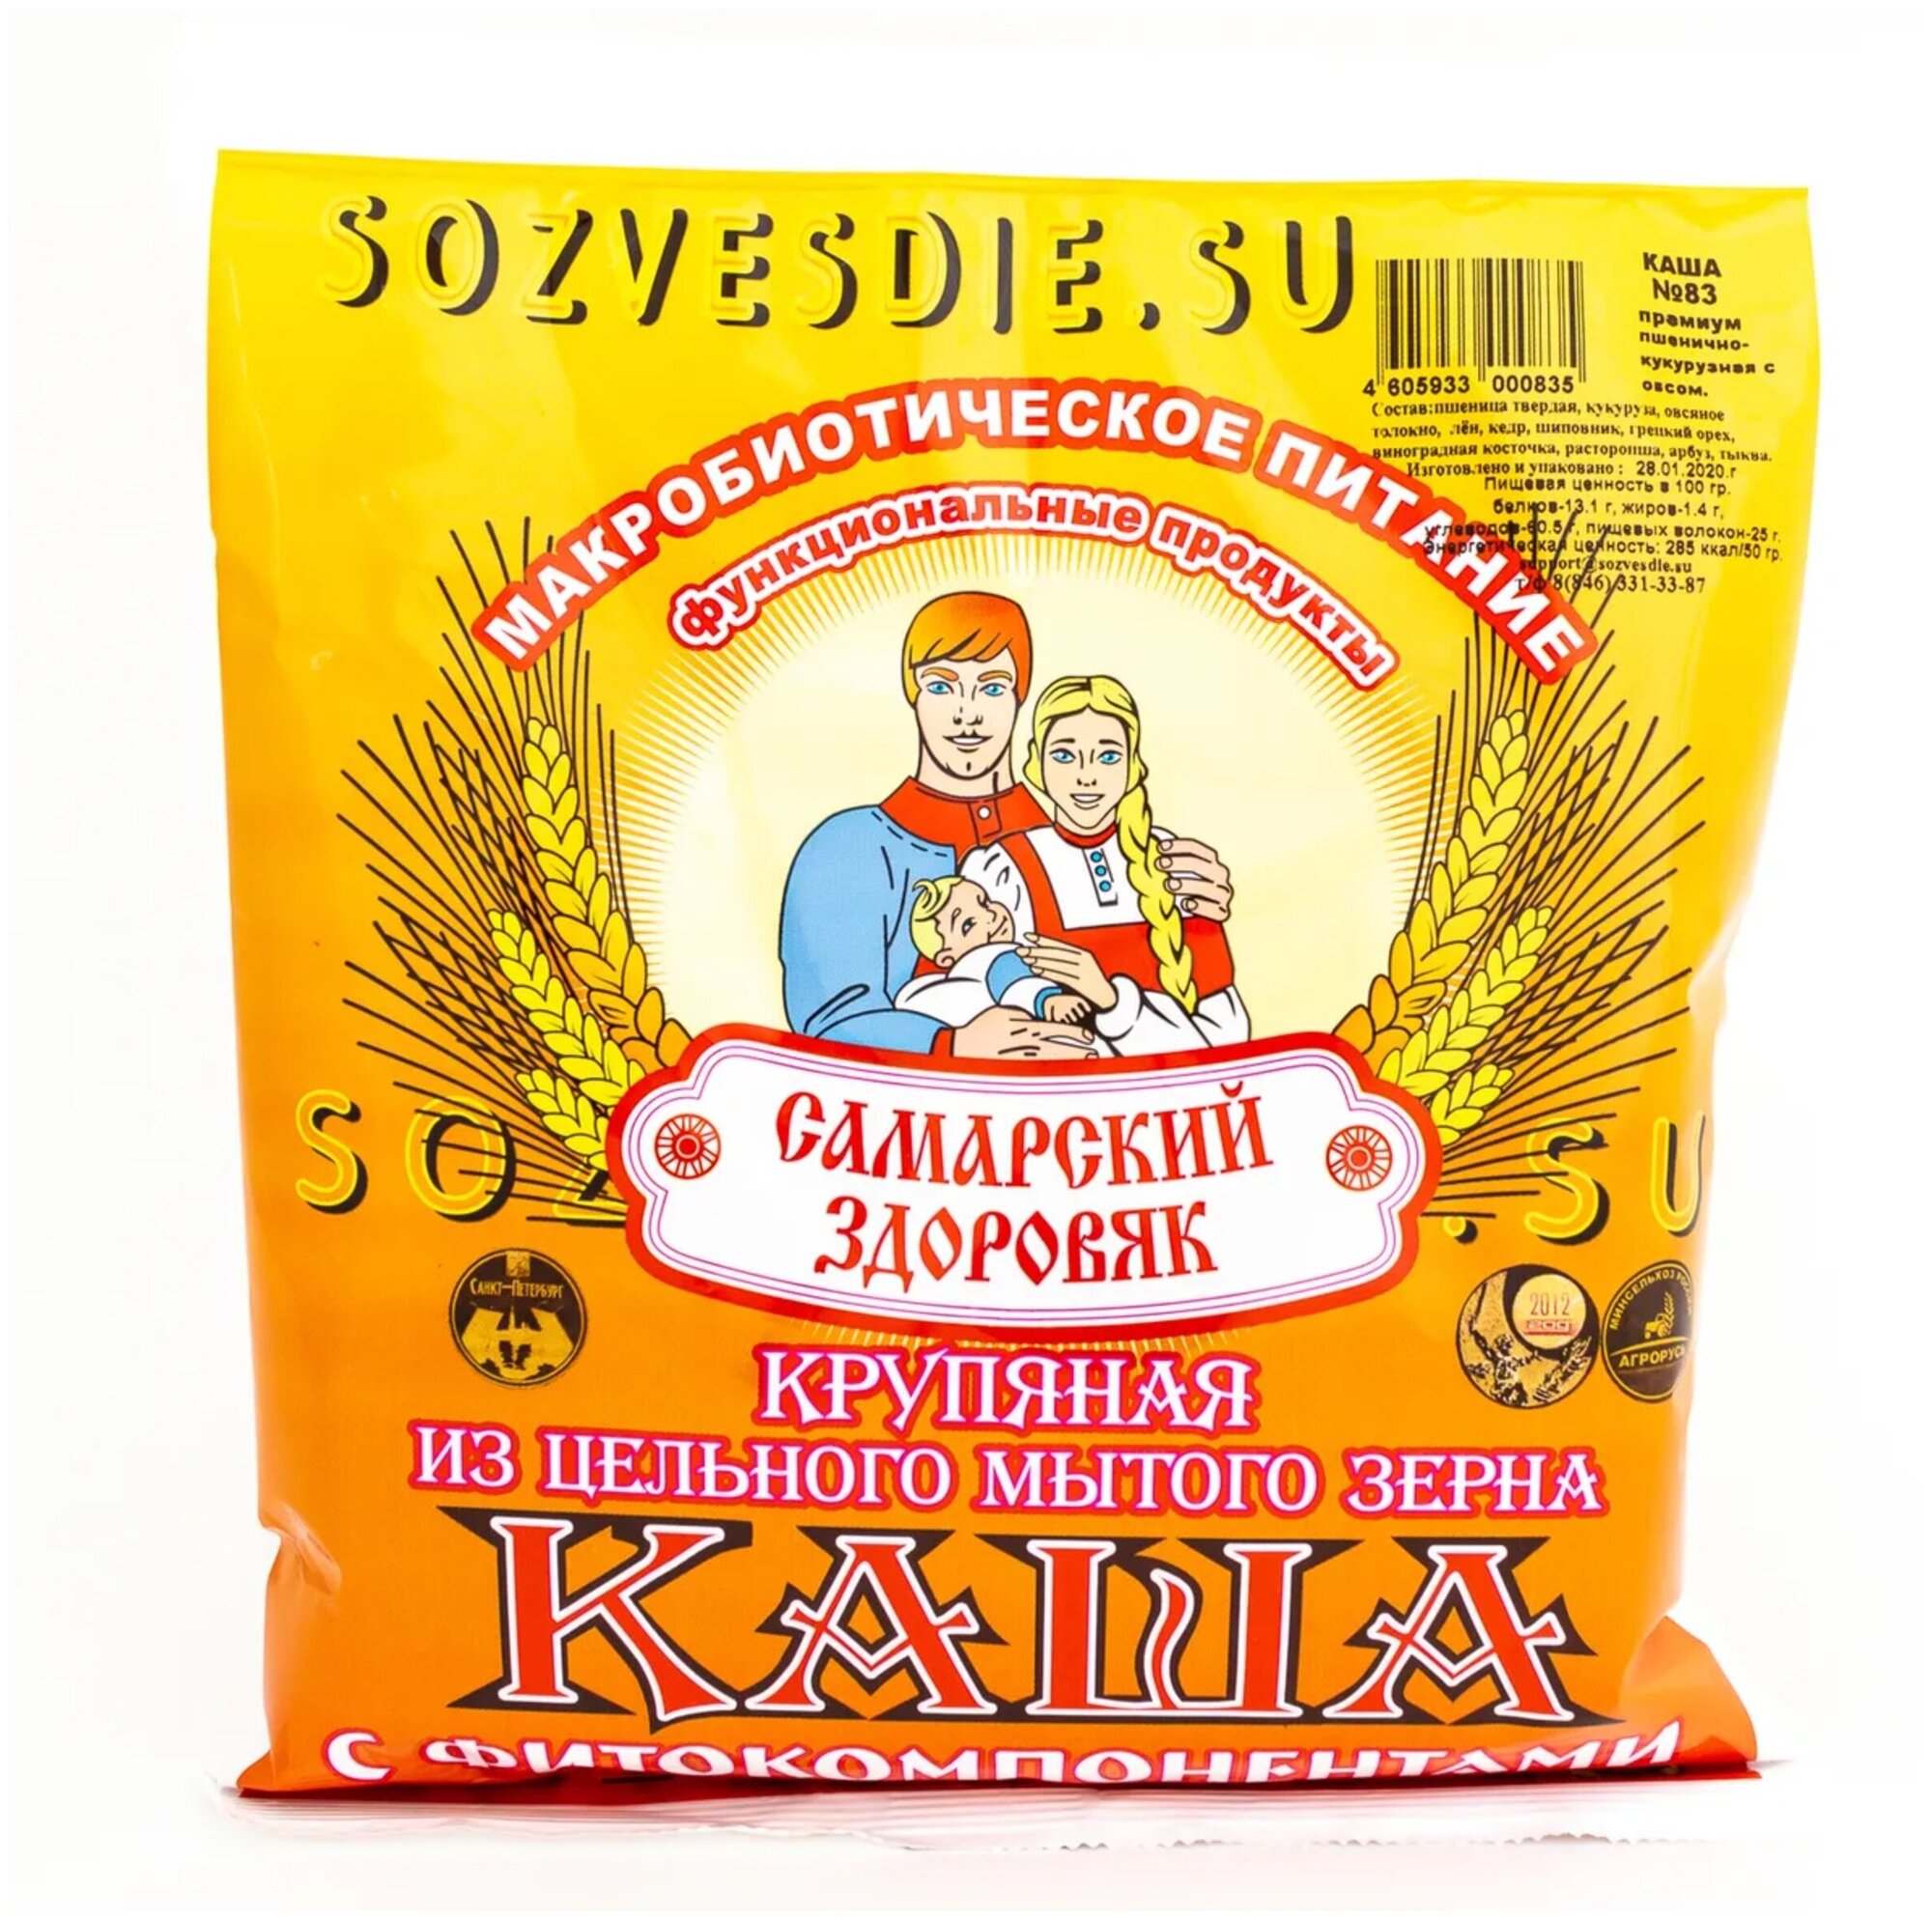 Каша "Самарский Здоровяк” №83 Премиум (пшенично-кукурузная с овсом), 250 г.